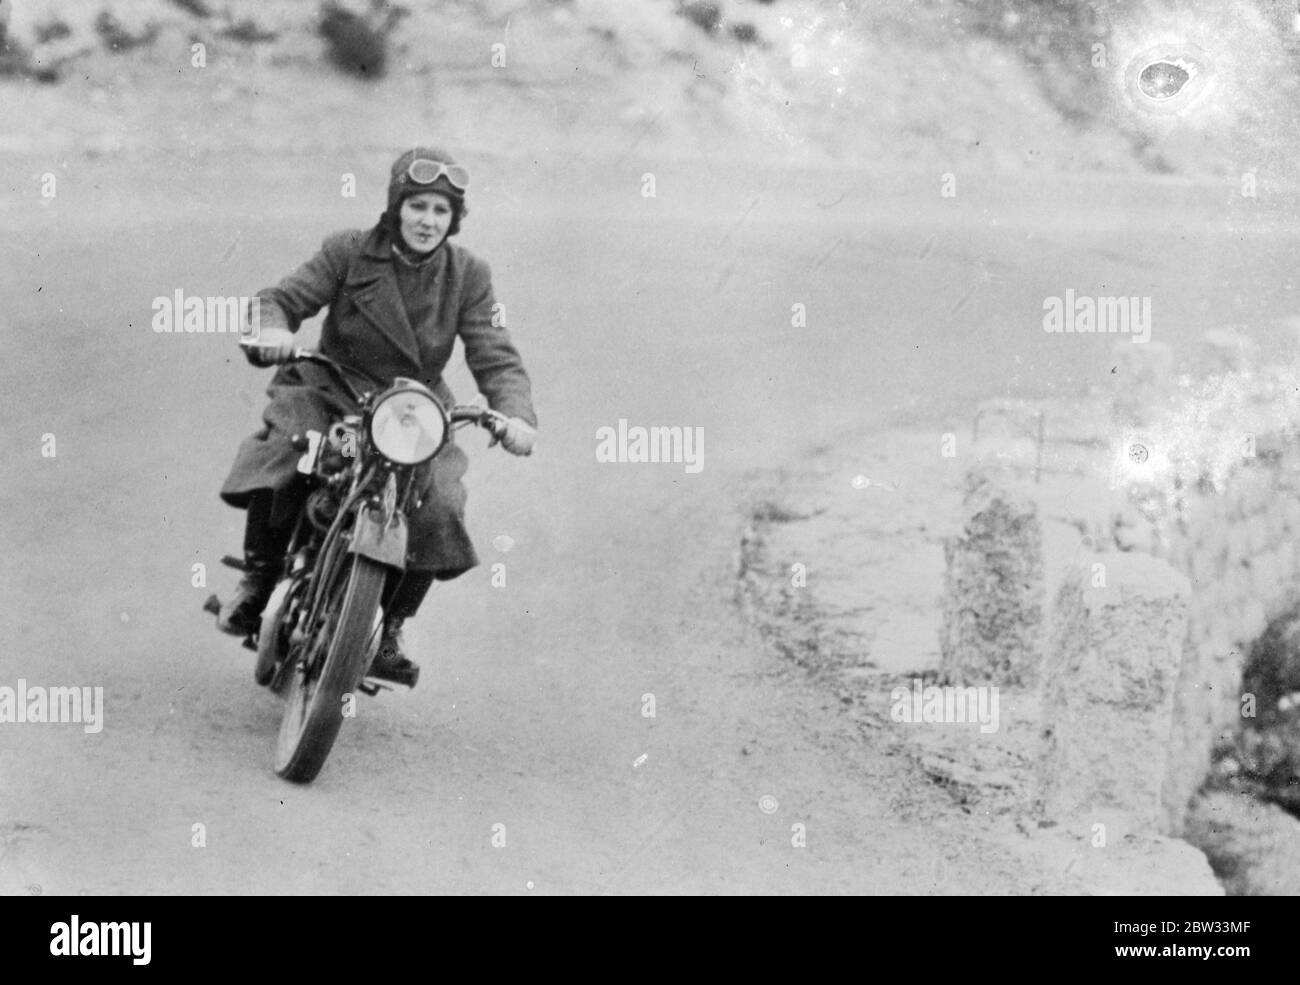 Spanien produziert eine Rasse von Amazonen . Spanische Frauen weltweit bekannt für ihre Trägheit, kommen schnell in den Vordergrund als Sportlerinnen. Sie dringen in jedes Feld und ein Rennen der Amazonen in der Aufsteigen in die Welt-Events in jedem Zweig des Sports zu konkurrieren. Spanien ' s erste Frau Track Rider , Senorita Irache , auf der Strecke . 15 März 1932 Stockfoto